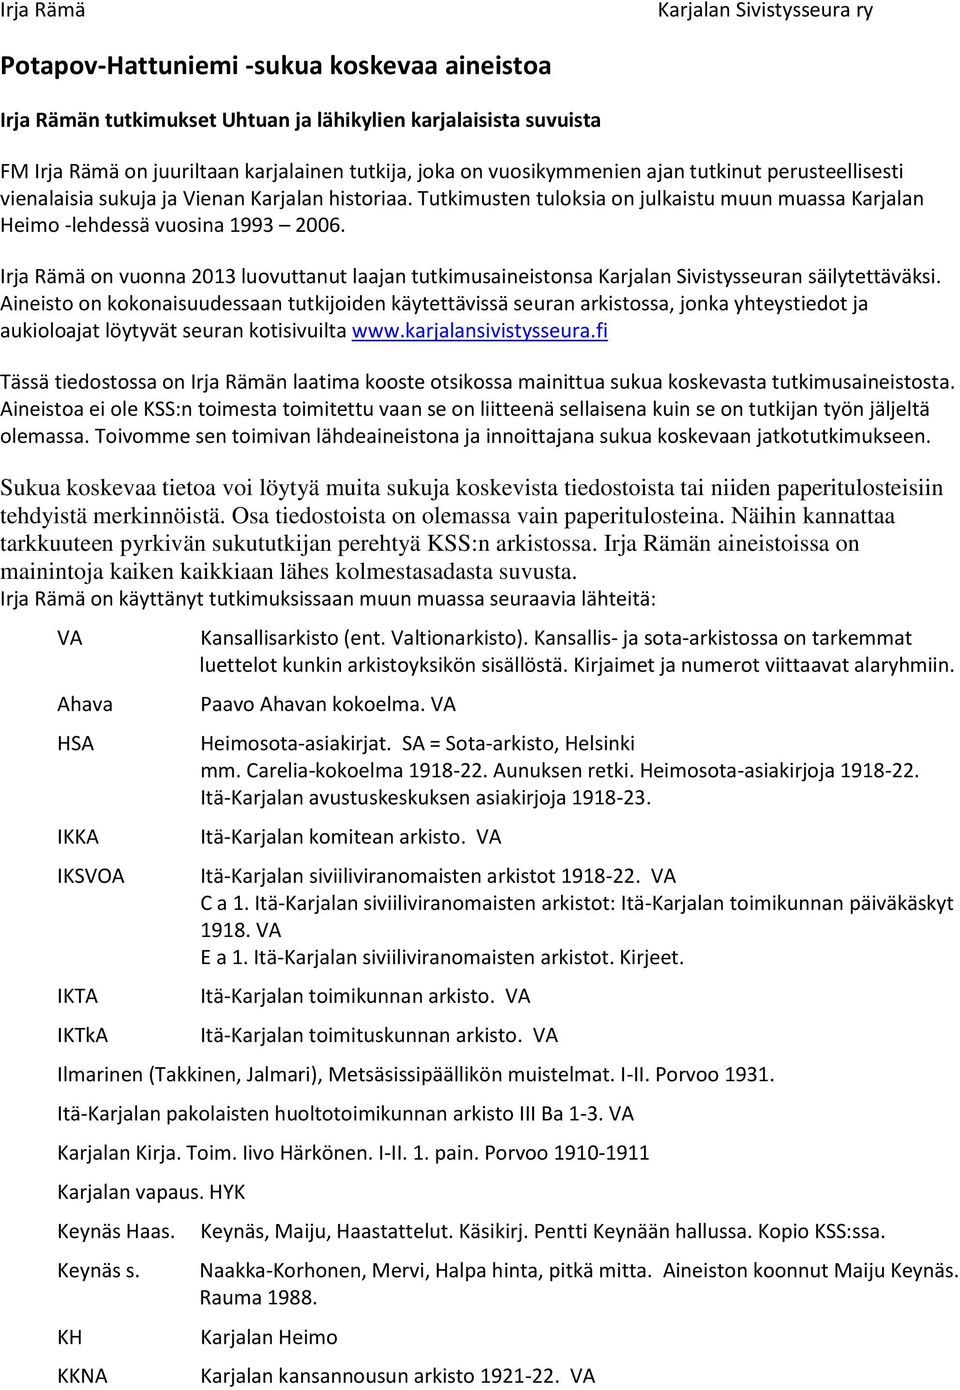 Irja Rämä on vuonna 2013 luovuttanut laajan tutkimusaineistonsa Karjalan Sivistysseuran säilytettäväksi.